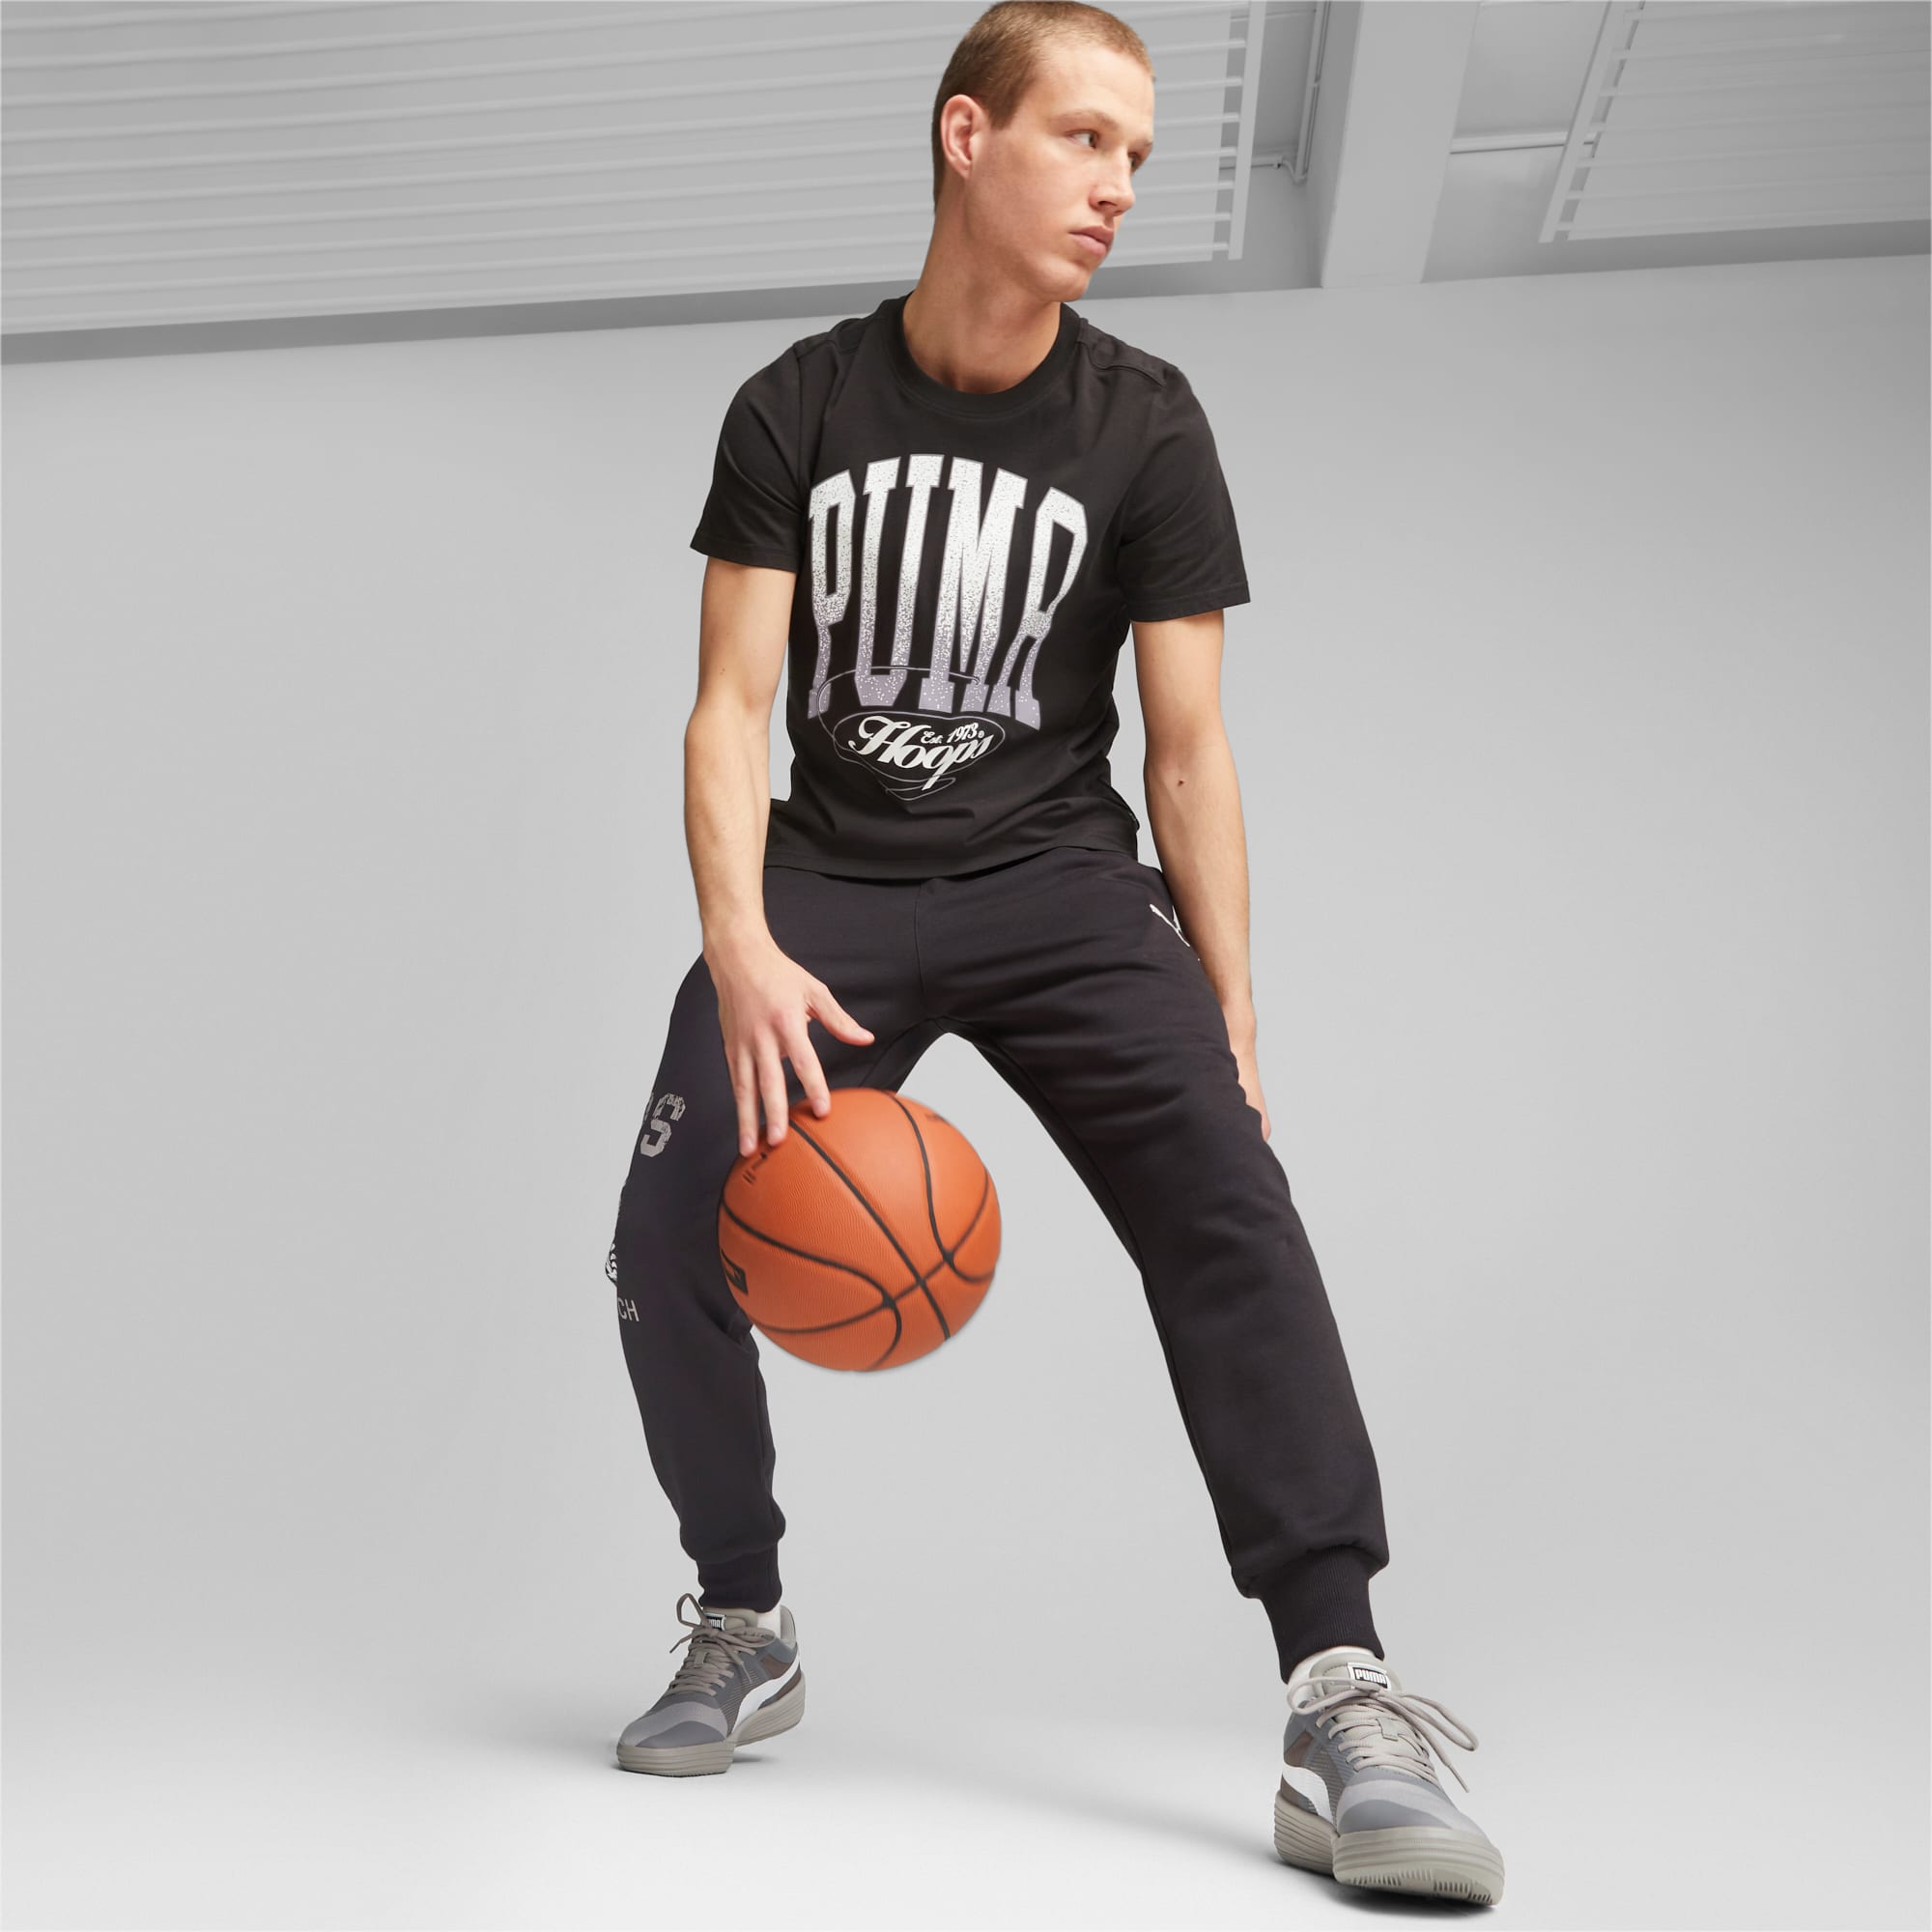 PUMA Clyde All-Pro Team Basketballschuhe Für Herren, Grau/Weiß, Größe: 42, Schuhe